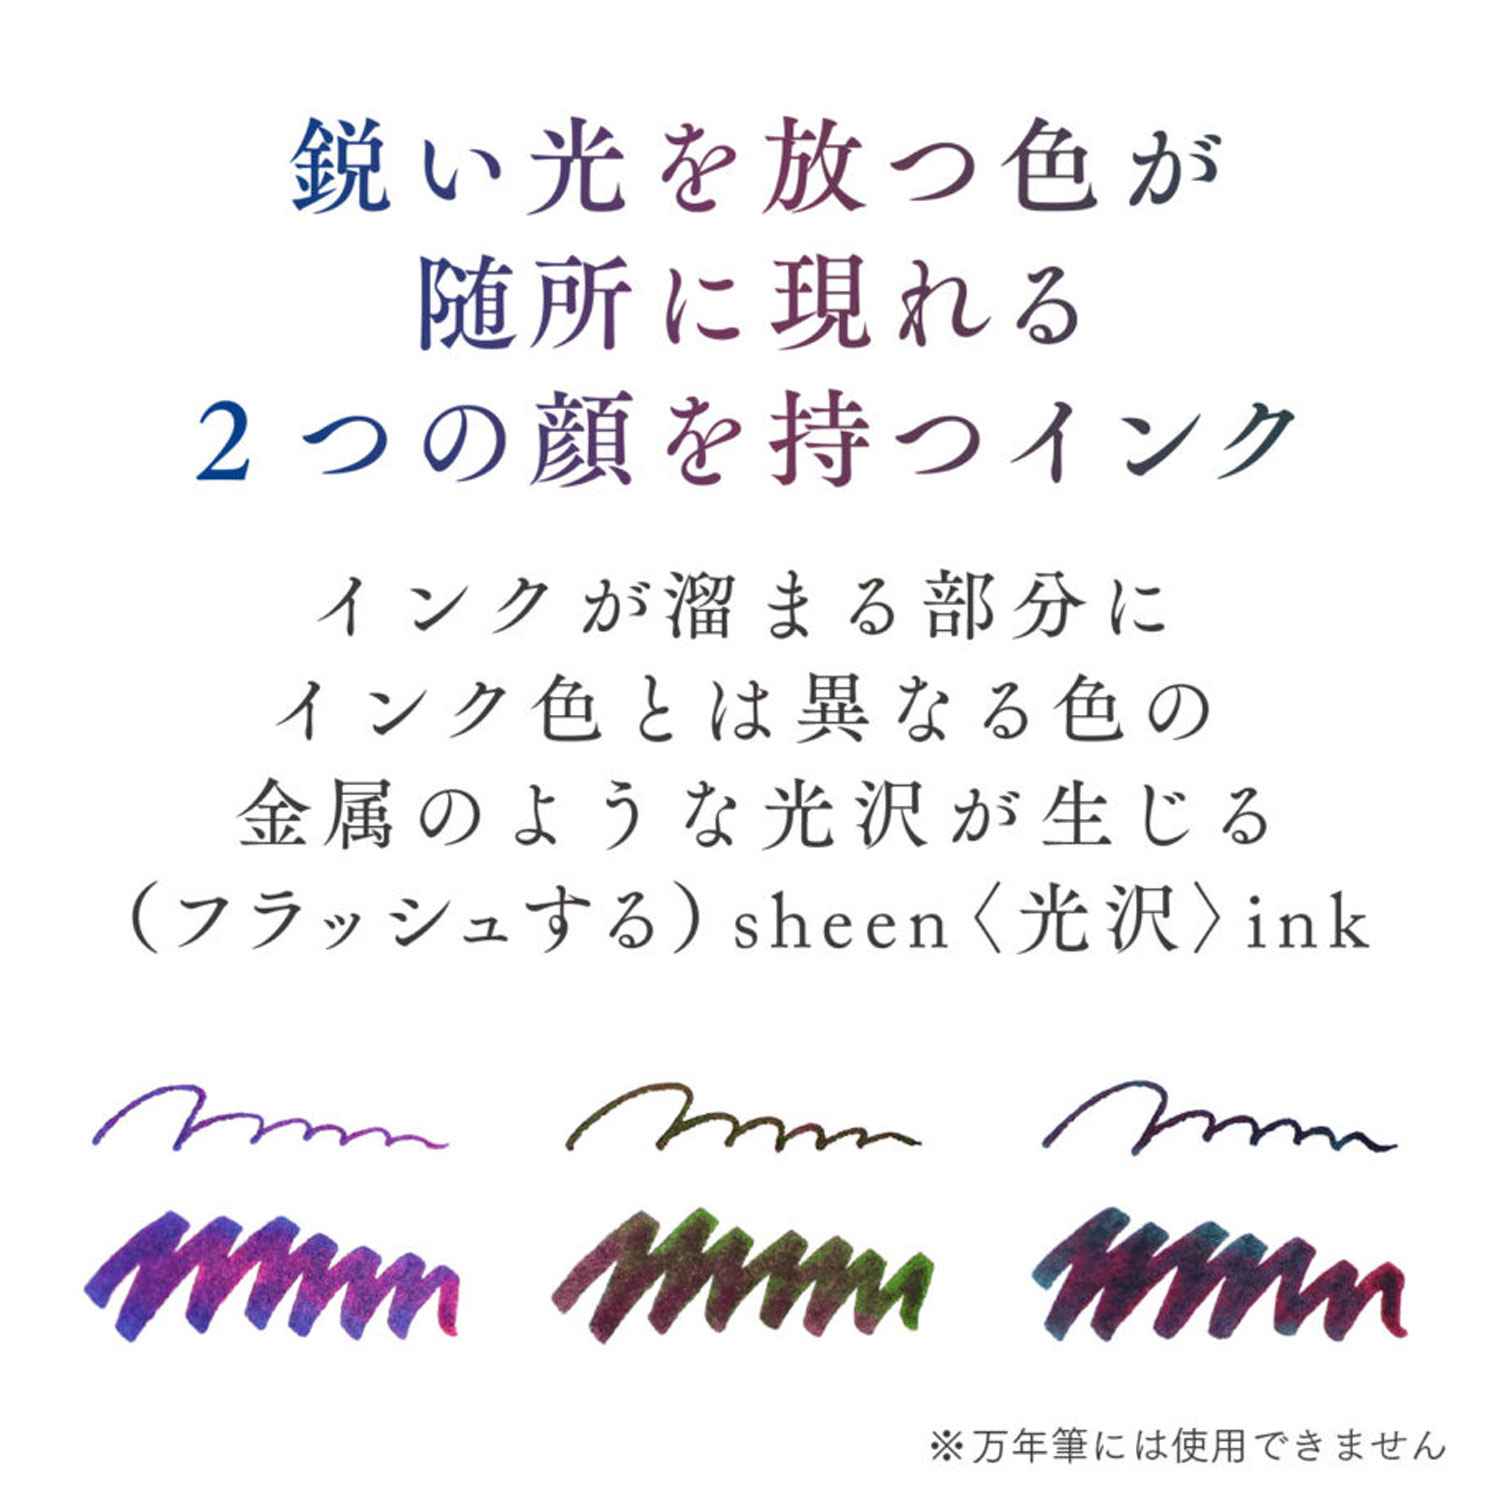 【限定】セーラー万年筆 つけペンインクセット Dipton+hocoro  10-0251【メール便不可】　全3色から選択